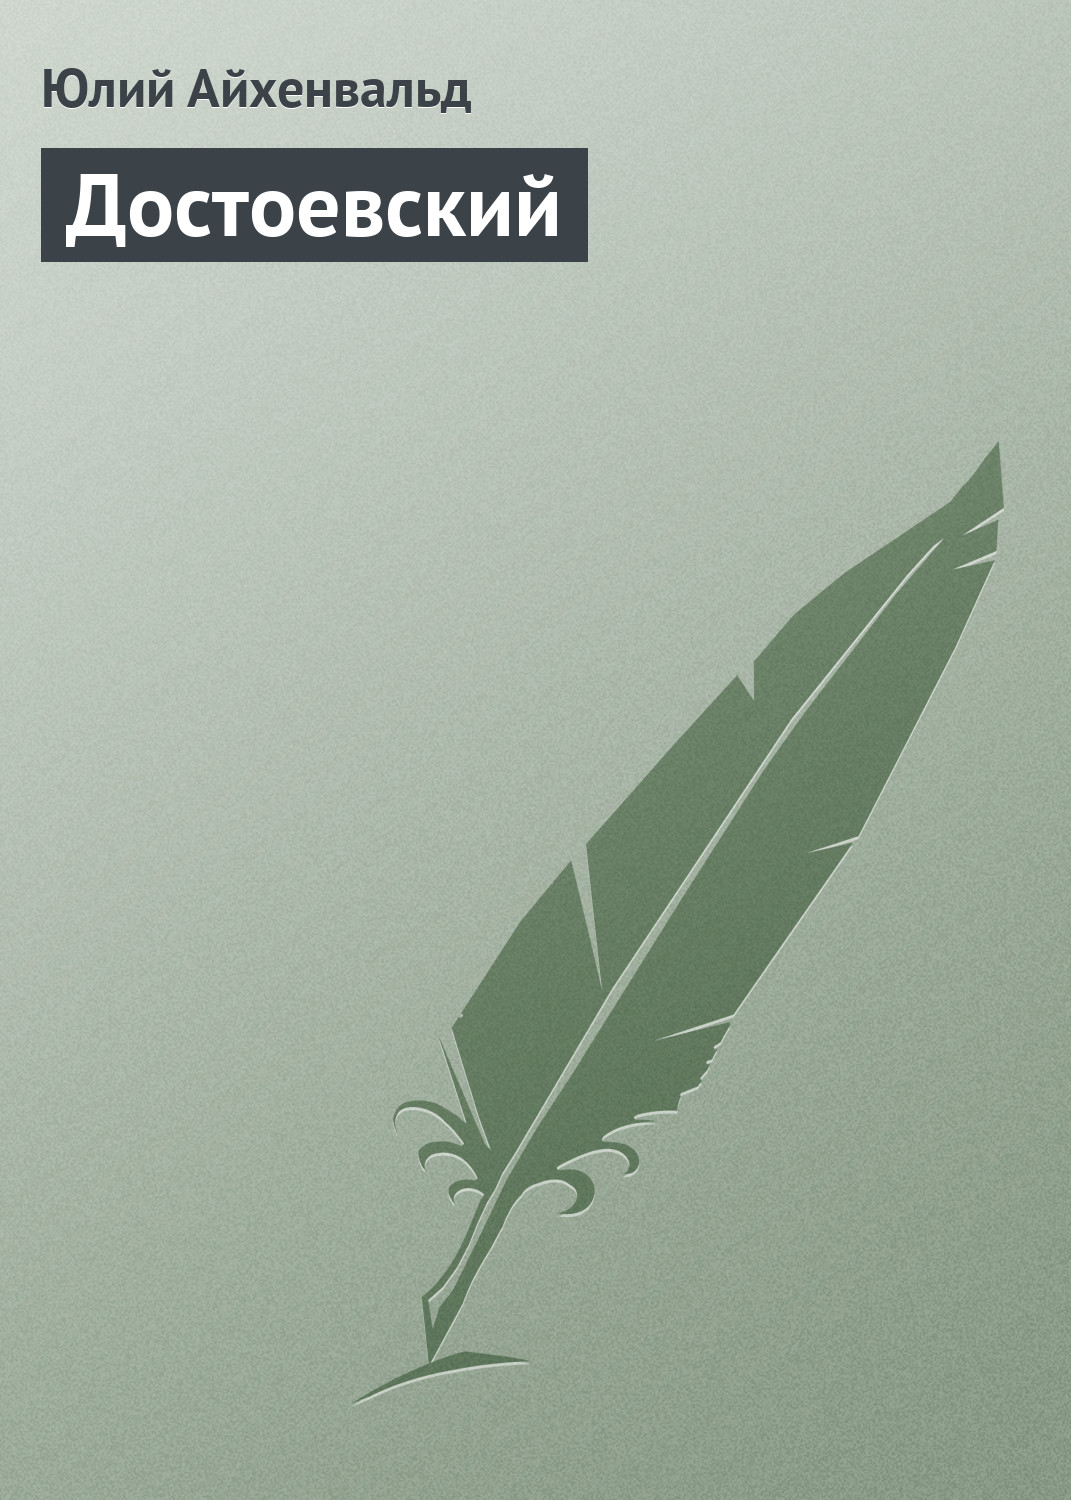 Книга Достоевский из серии , созданная Юлий Айхенвальд, может относится к жанру Критика. Стоимость книги Достоевский  с идентификатором 2594685 составляет 14.99 руб.